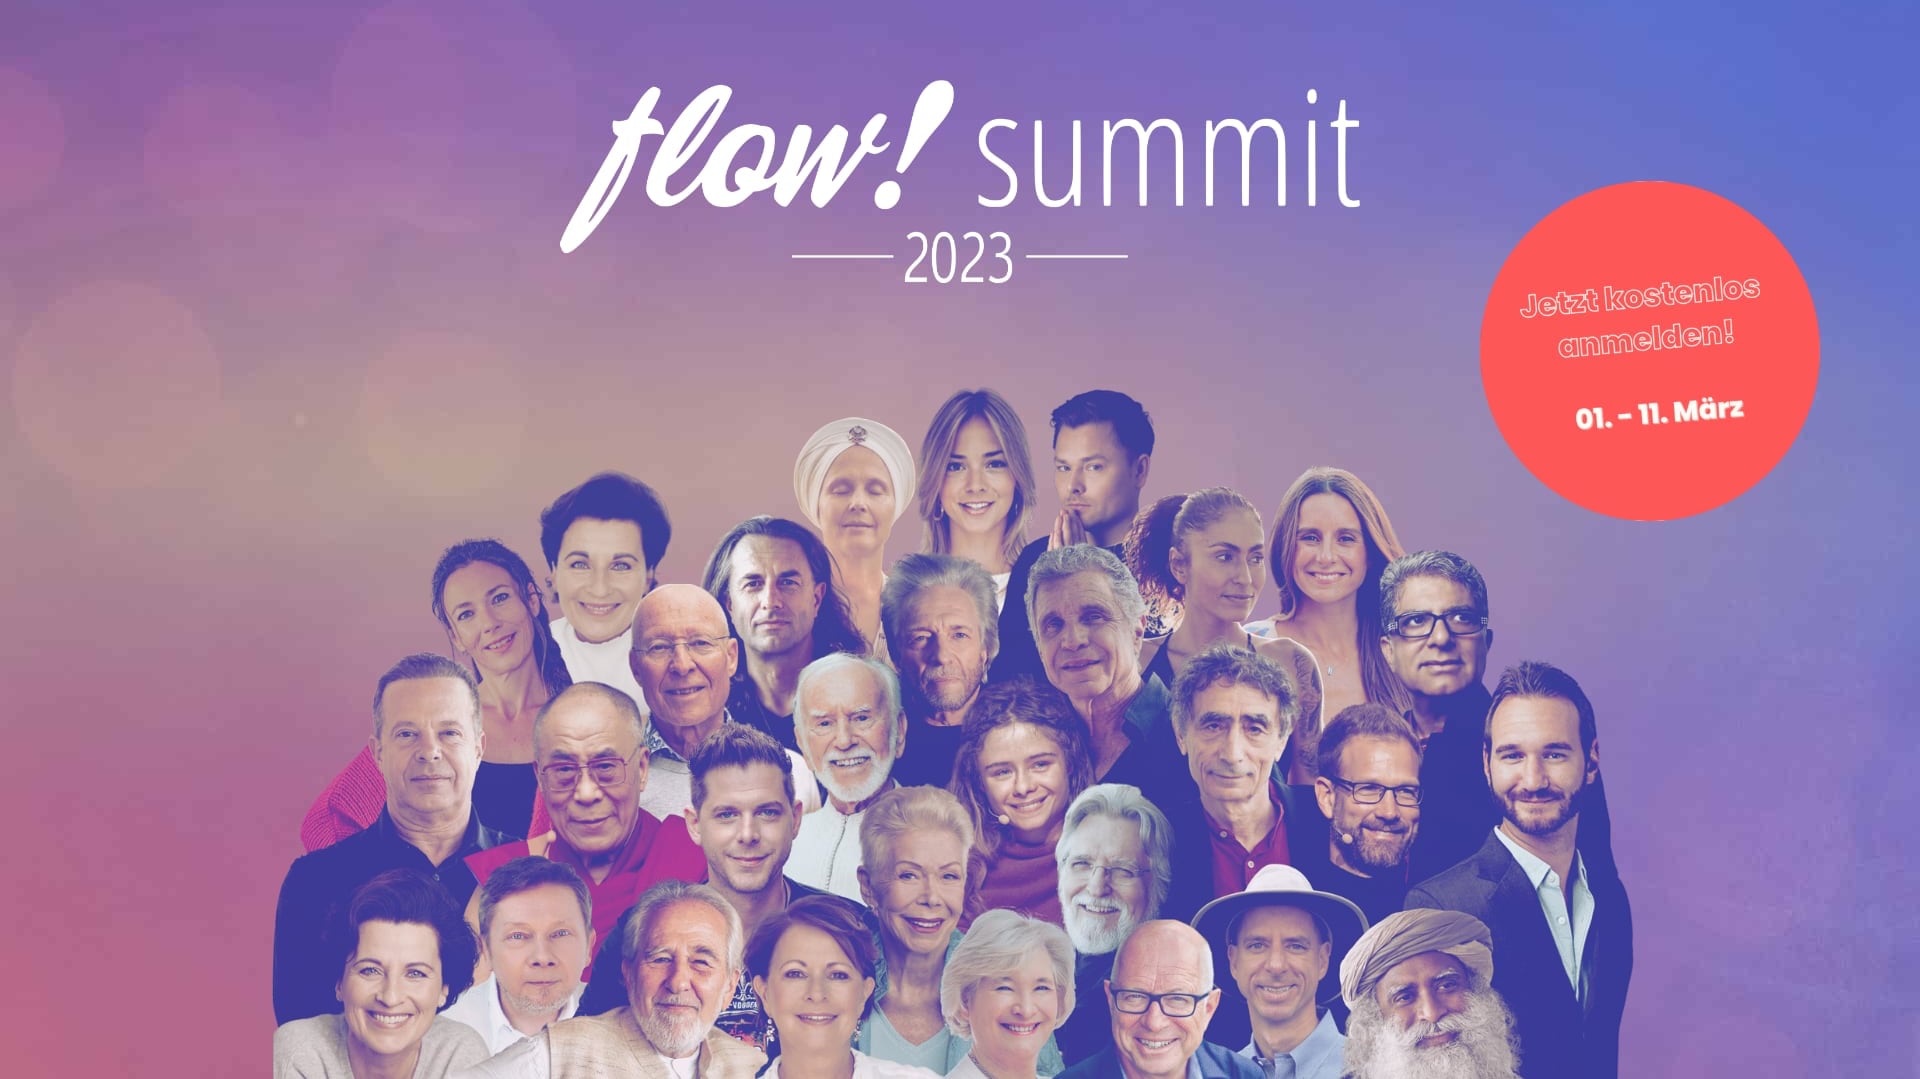 flow! summit 2023